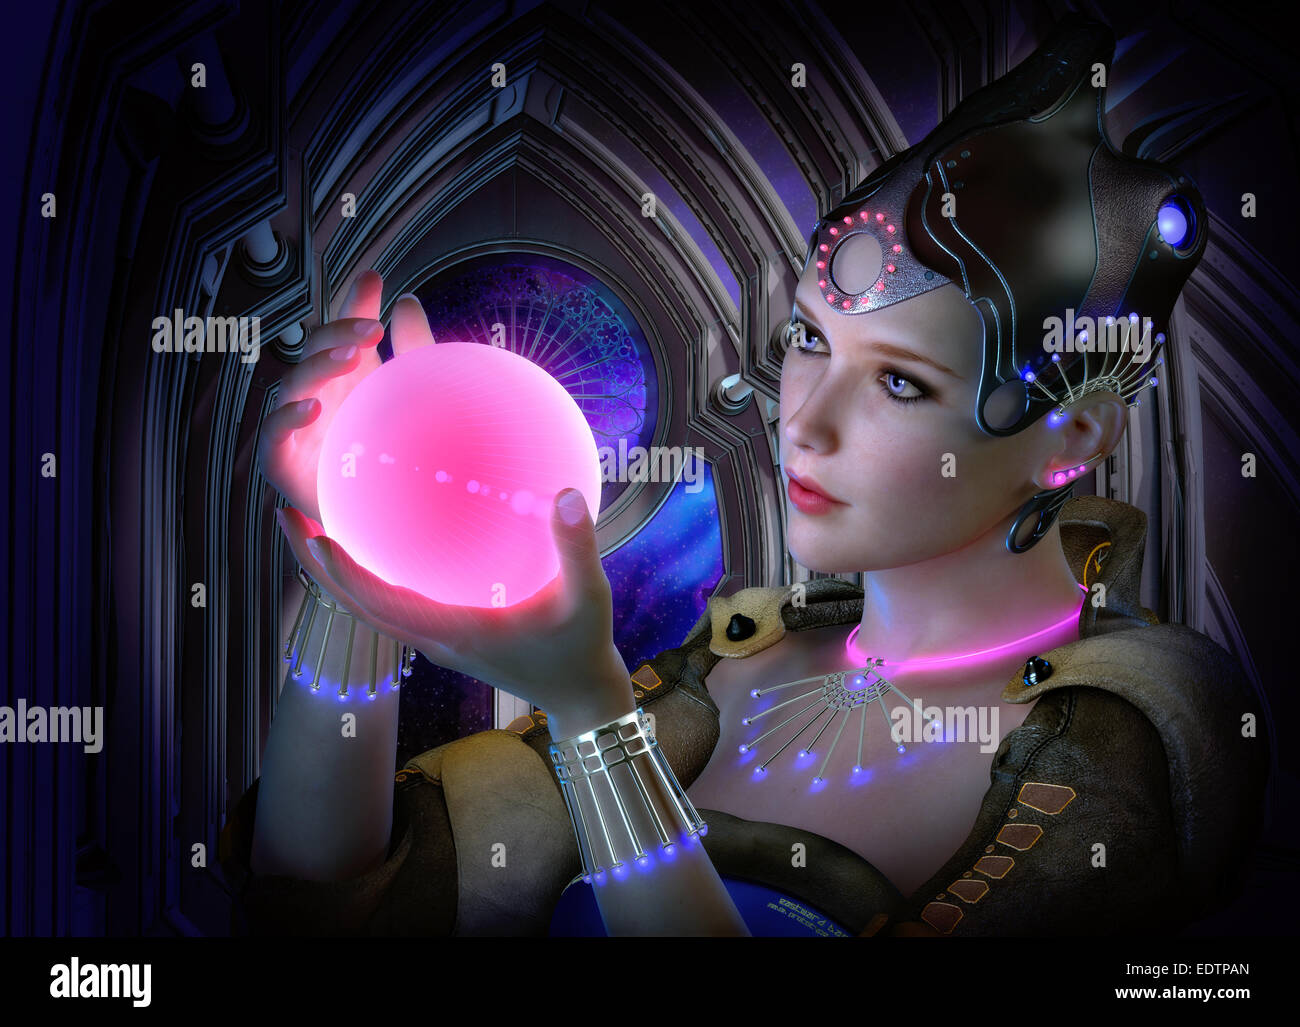 Computer grafica 3D di un ritratto di una donna con abiti e gioielli in science fiction stile e un incandescente palla in mano Foto Stock